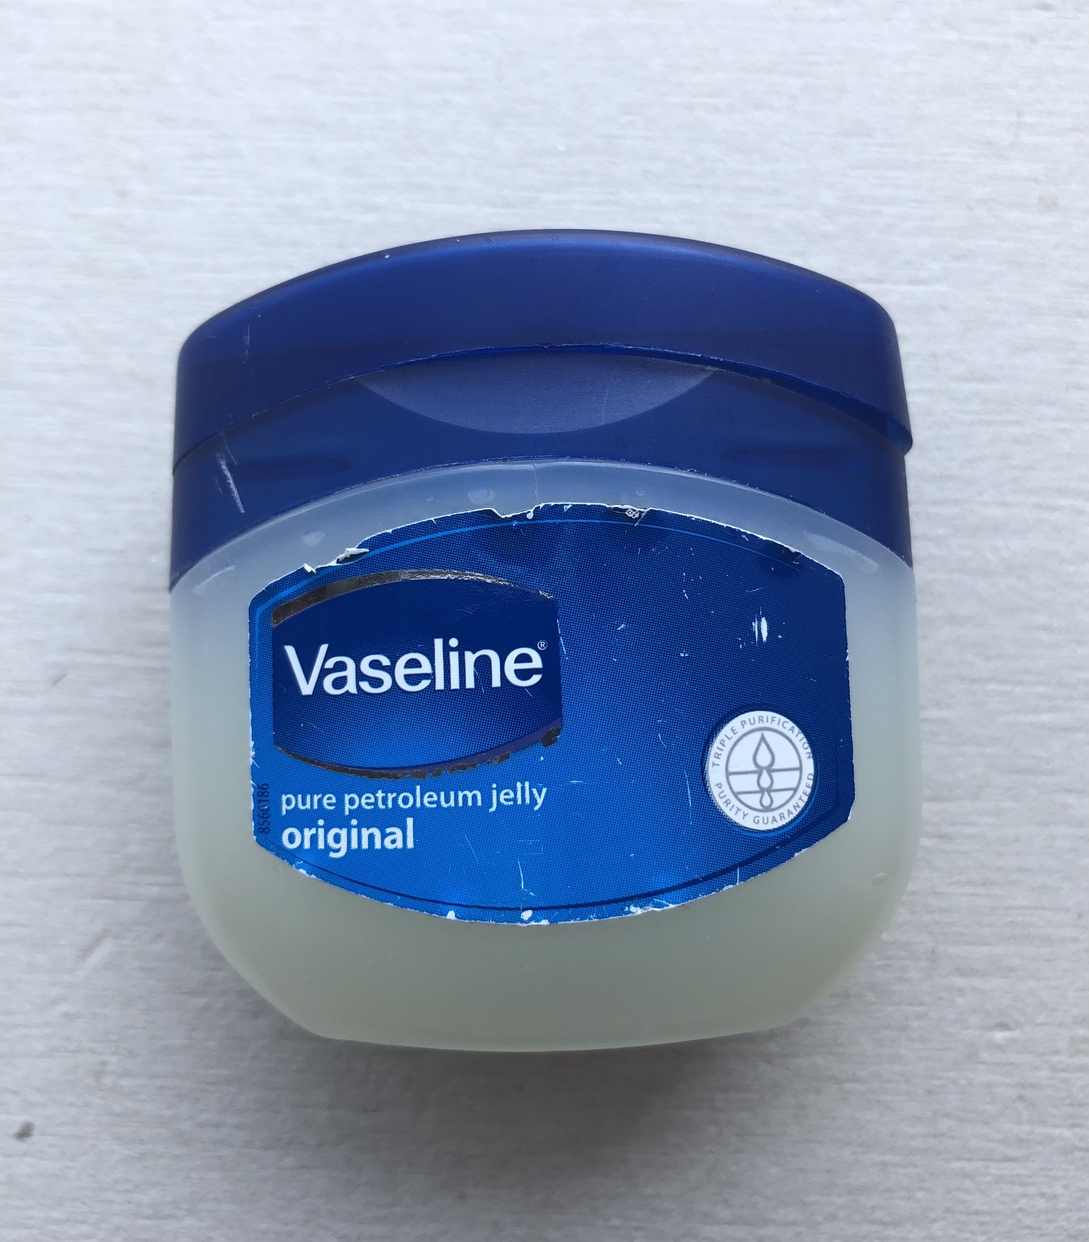 Vaseline(ヴァセリン) オリジナル ピュアスキンジェリーの良い点・メリットに関するコジコジさんの口コミ画像1